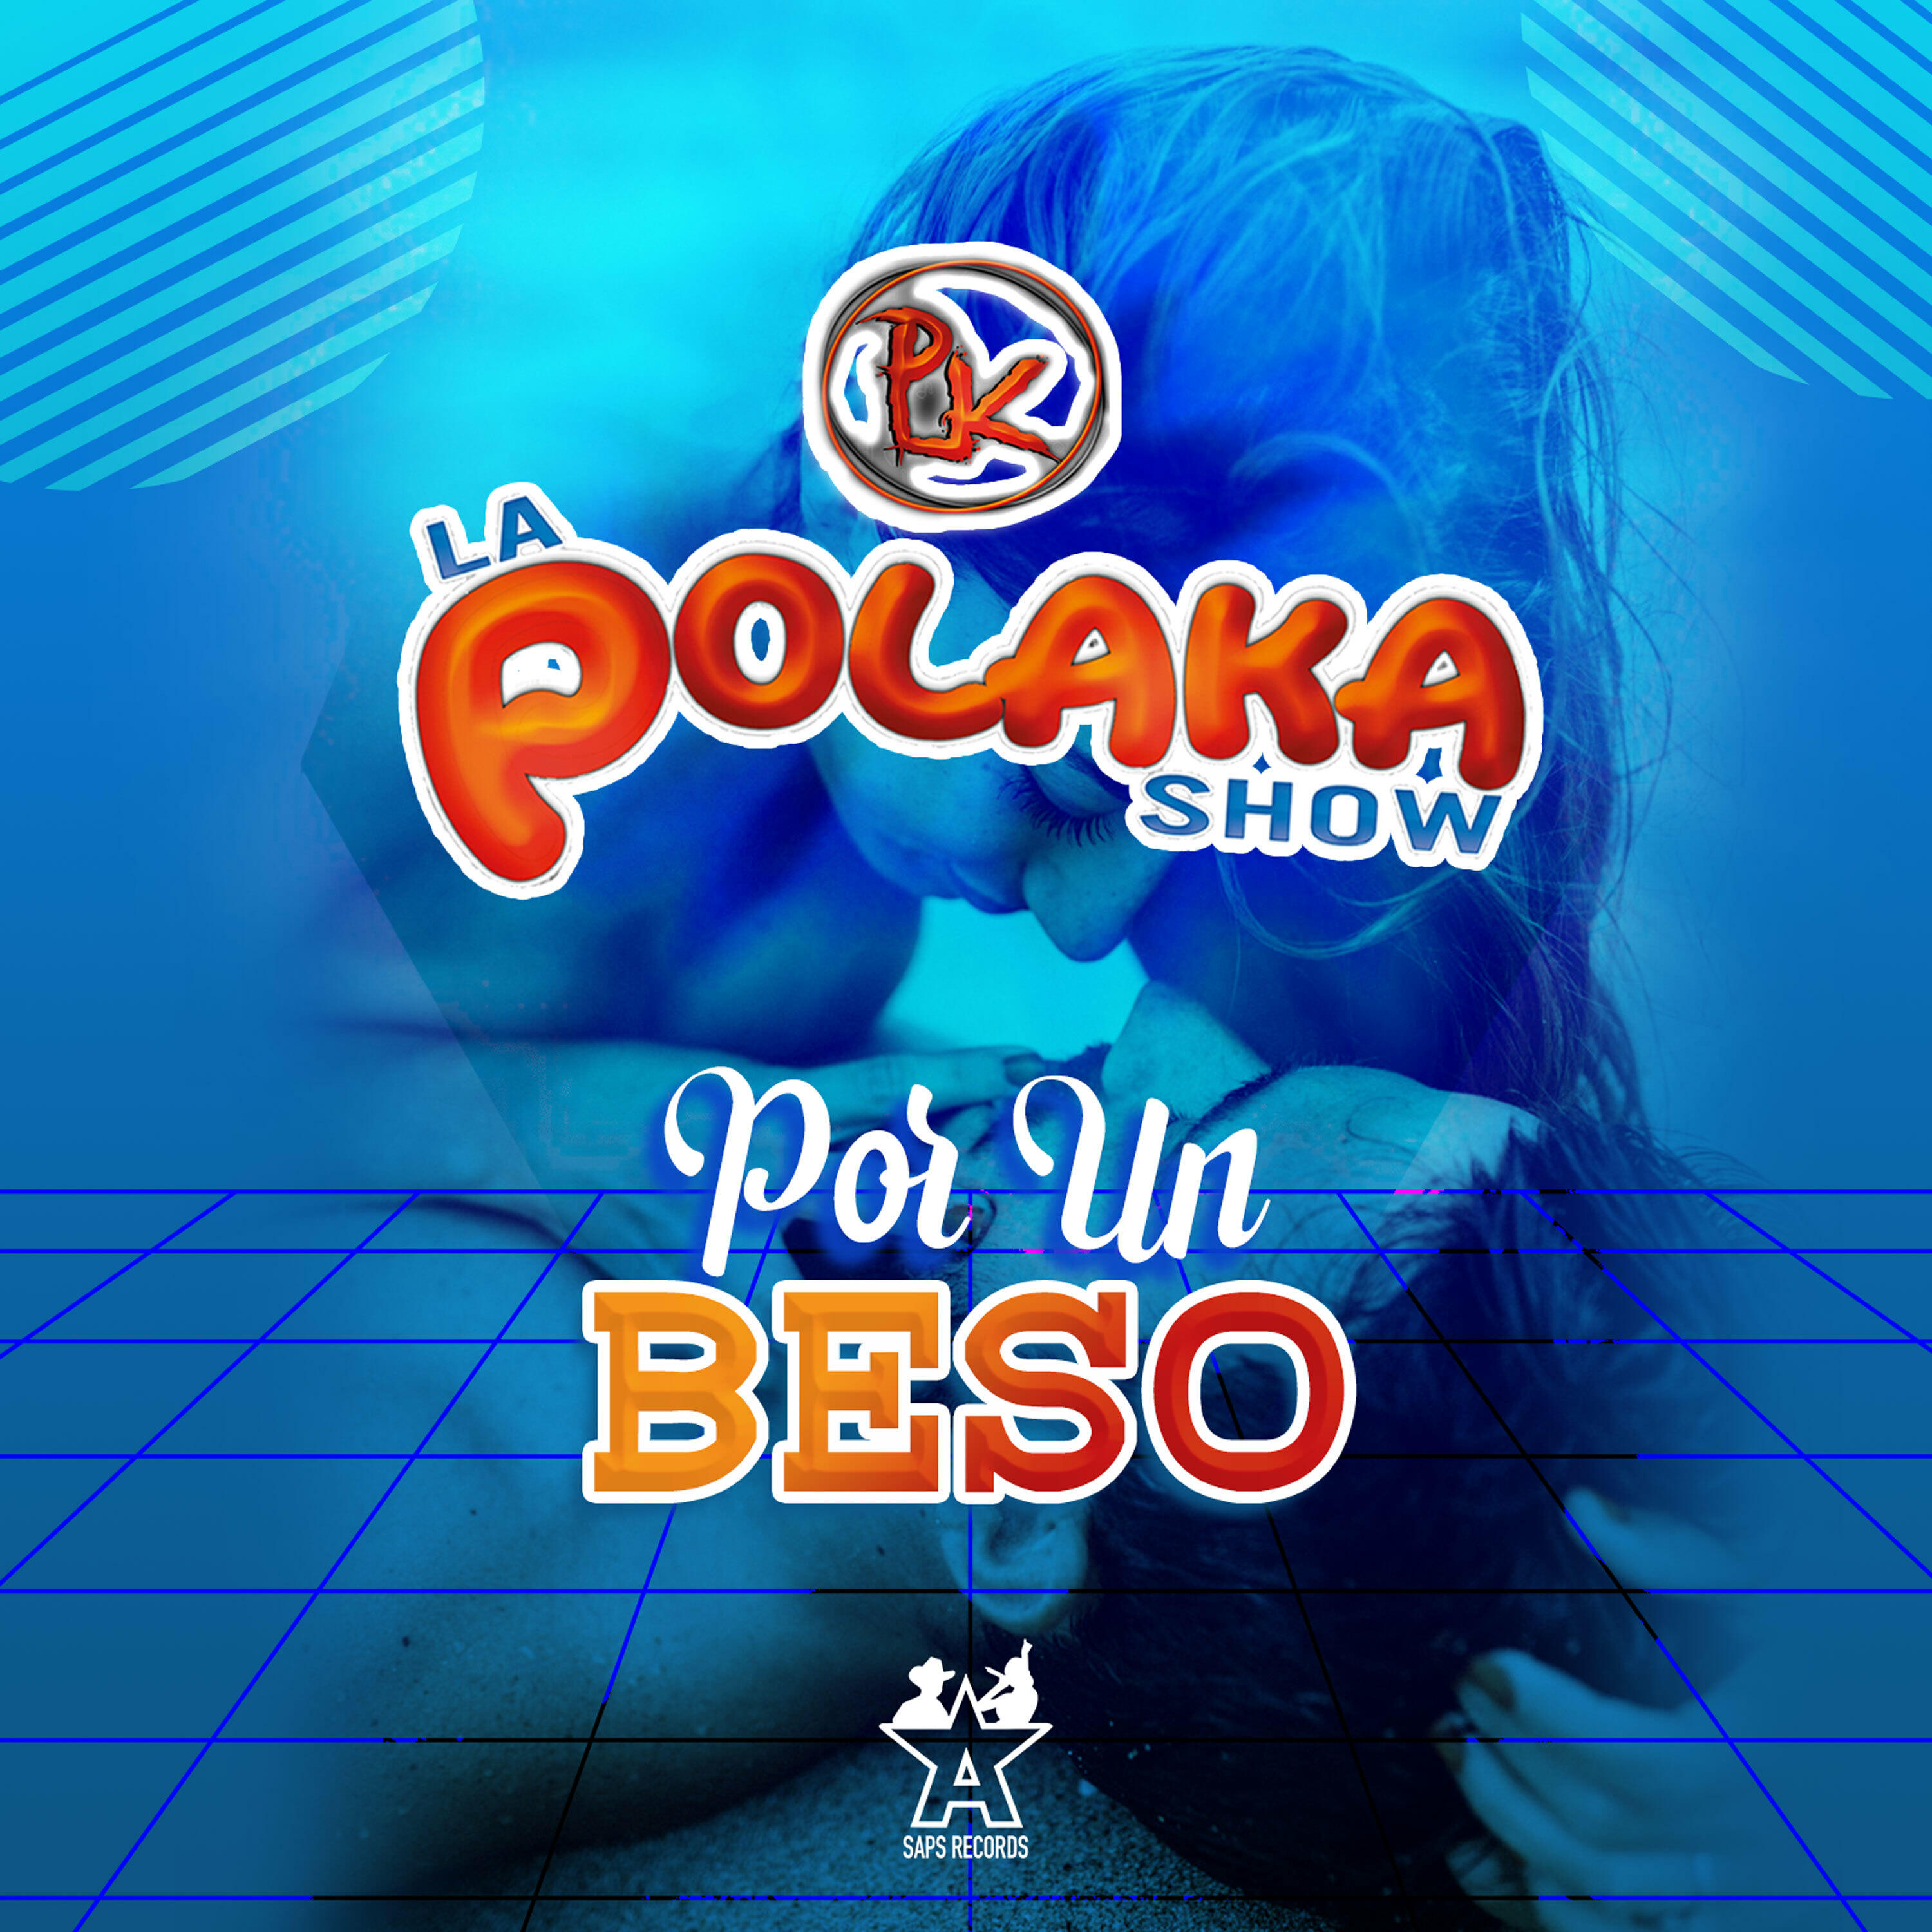 La Polaka Show Por Un Beso Iheart